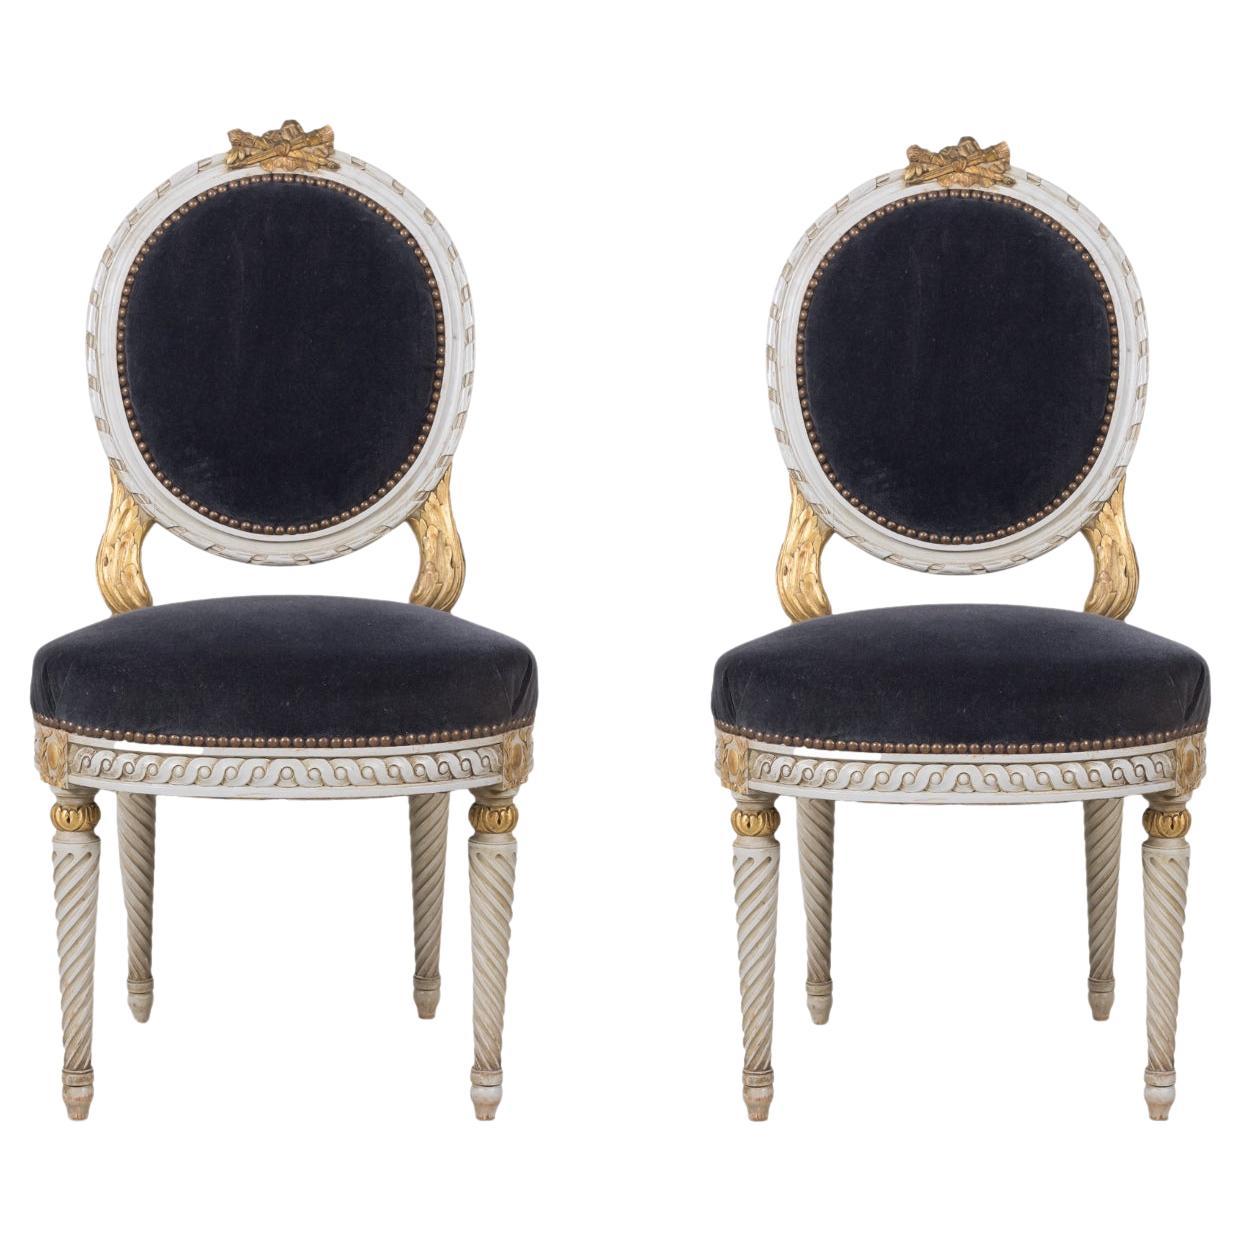 Paire de chaises d'appoint françaises anciennes de style Louis XVI dorées et peintes en blanc